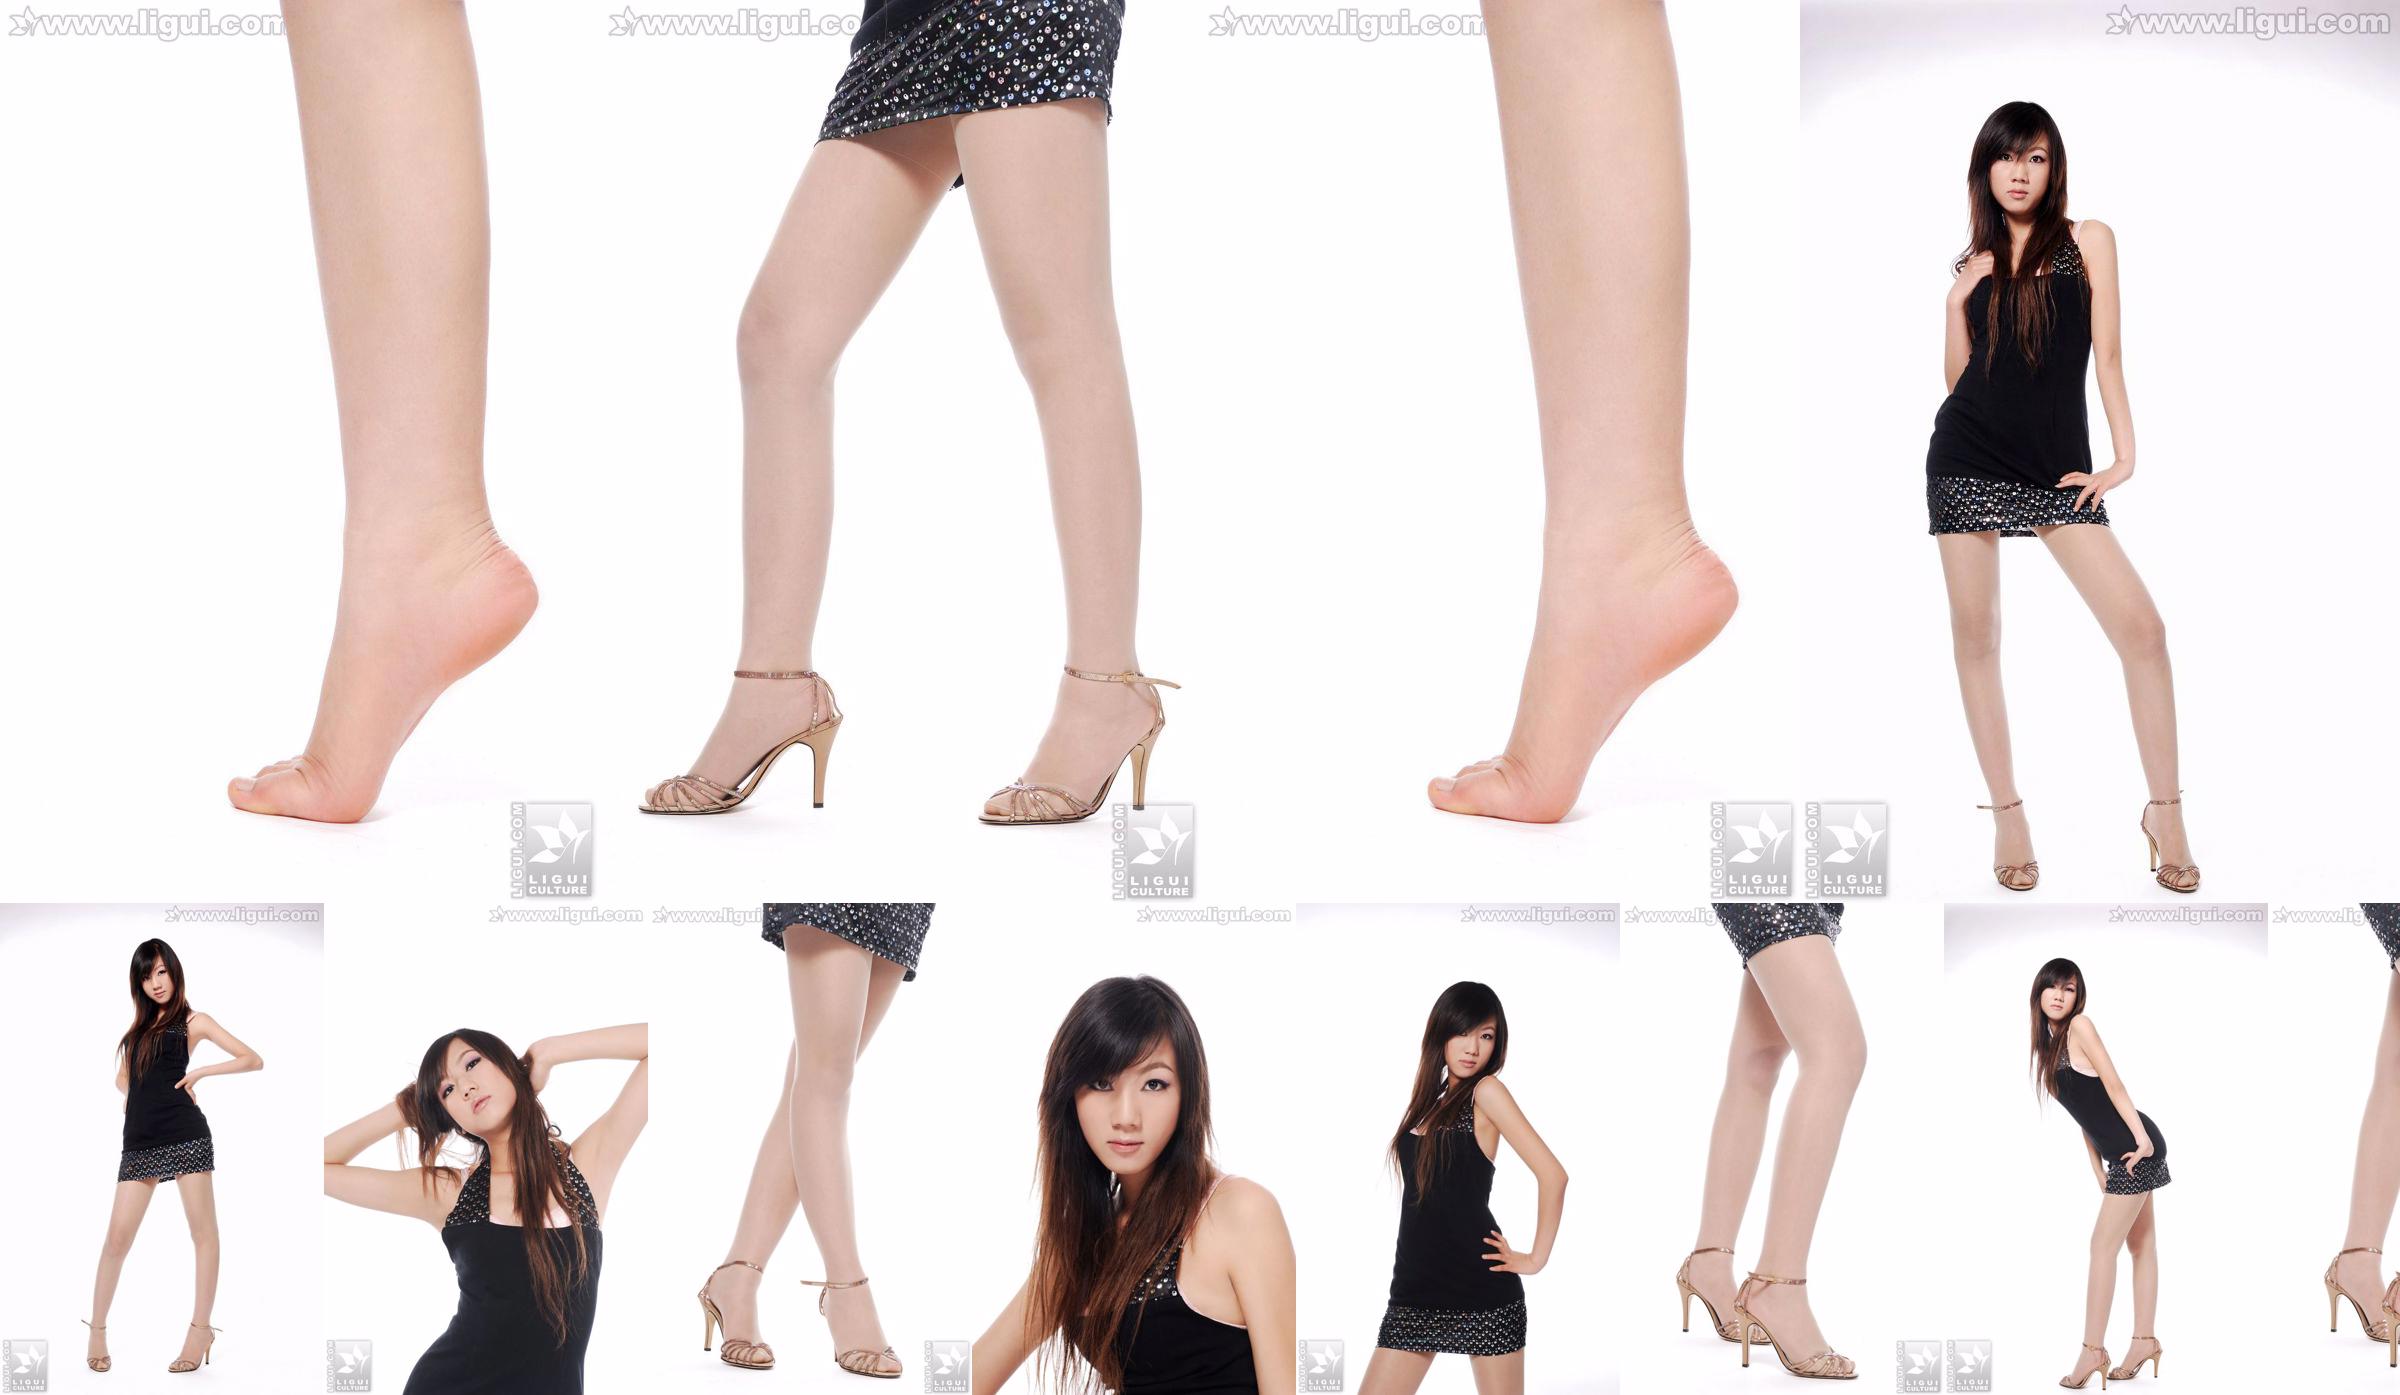 Modelo Sheng Chao "lindo novo show de pé de jade de salto alto" [Sheng LiGui] Foto de belas pernas e pé de jade No.bc3ea2 Página 6